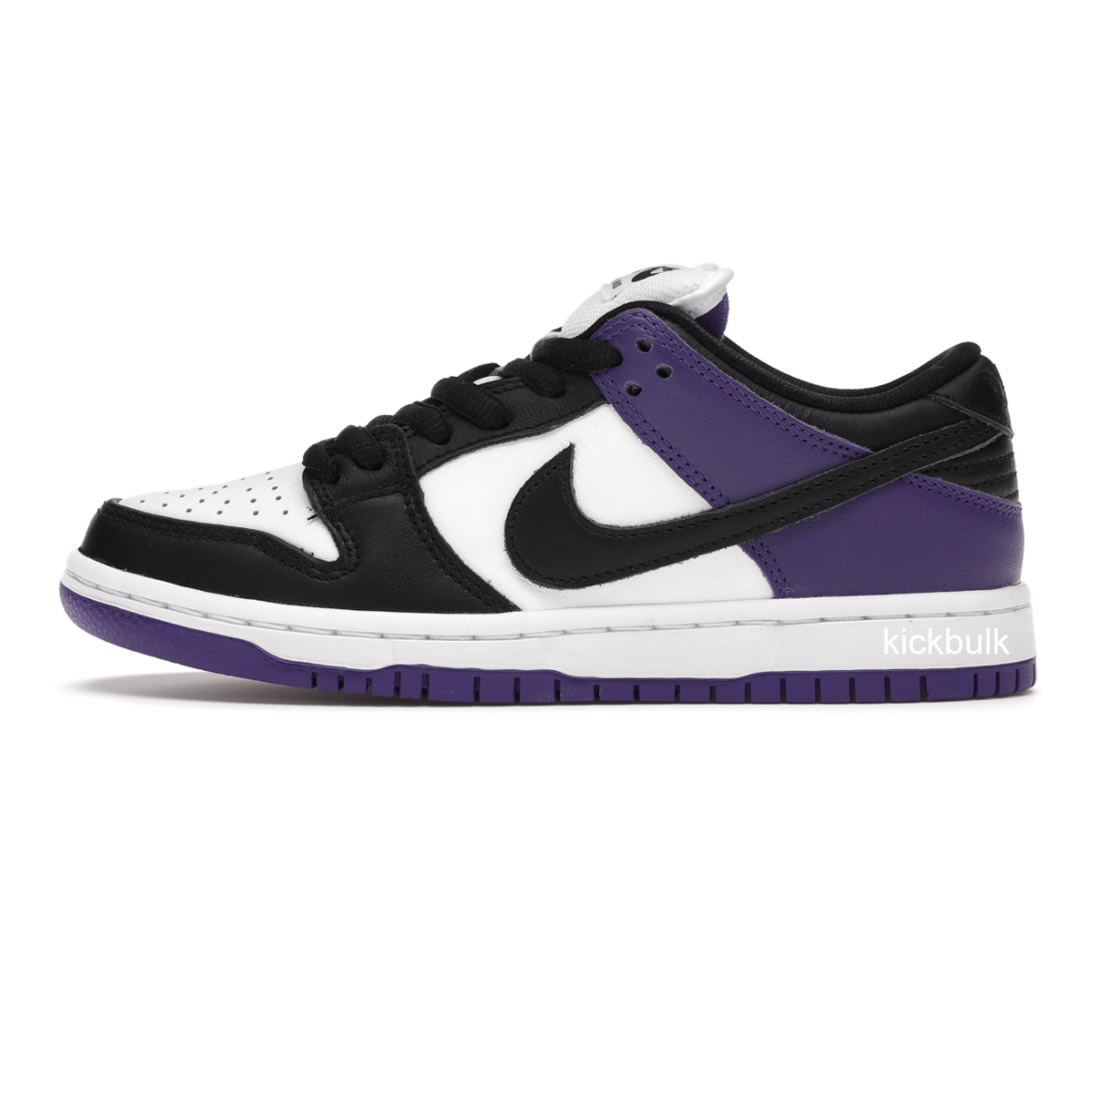 Nike Sb Dunk Low Court Purple Bq6817 500 1 - www.kickbulk.cc